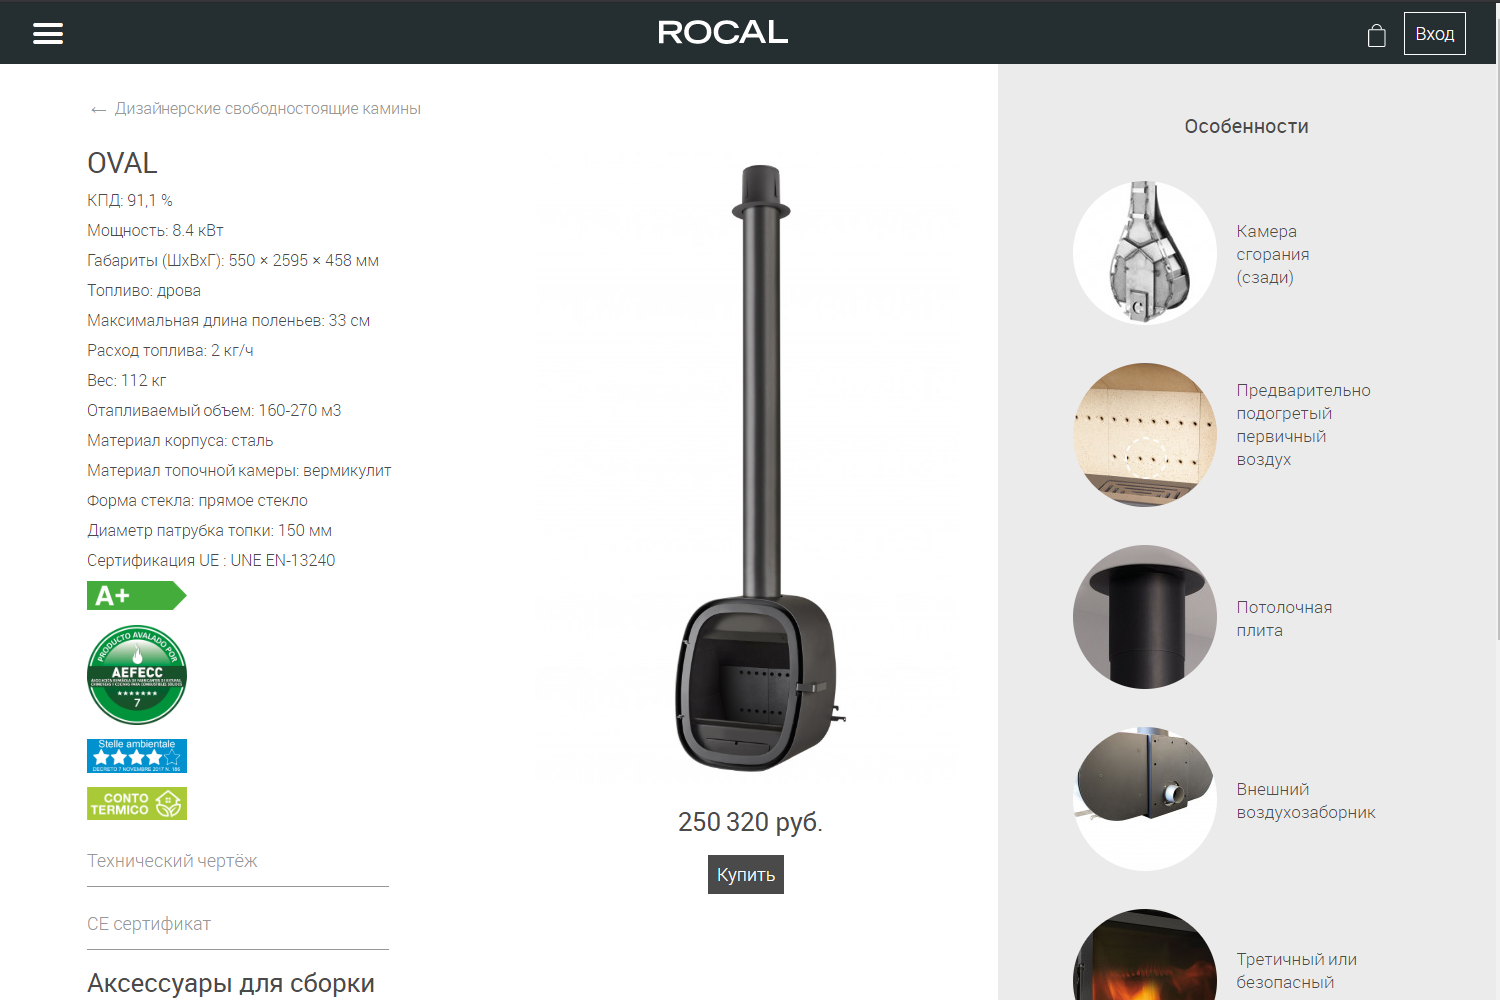 Монобрендовый интернет-магазин дизайнерских каминов Rocal